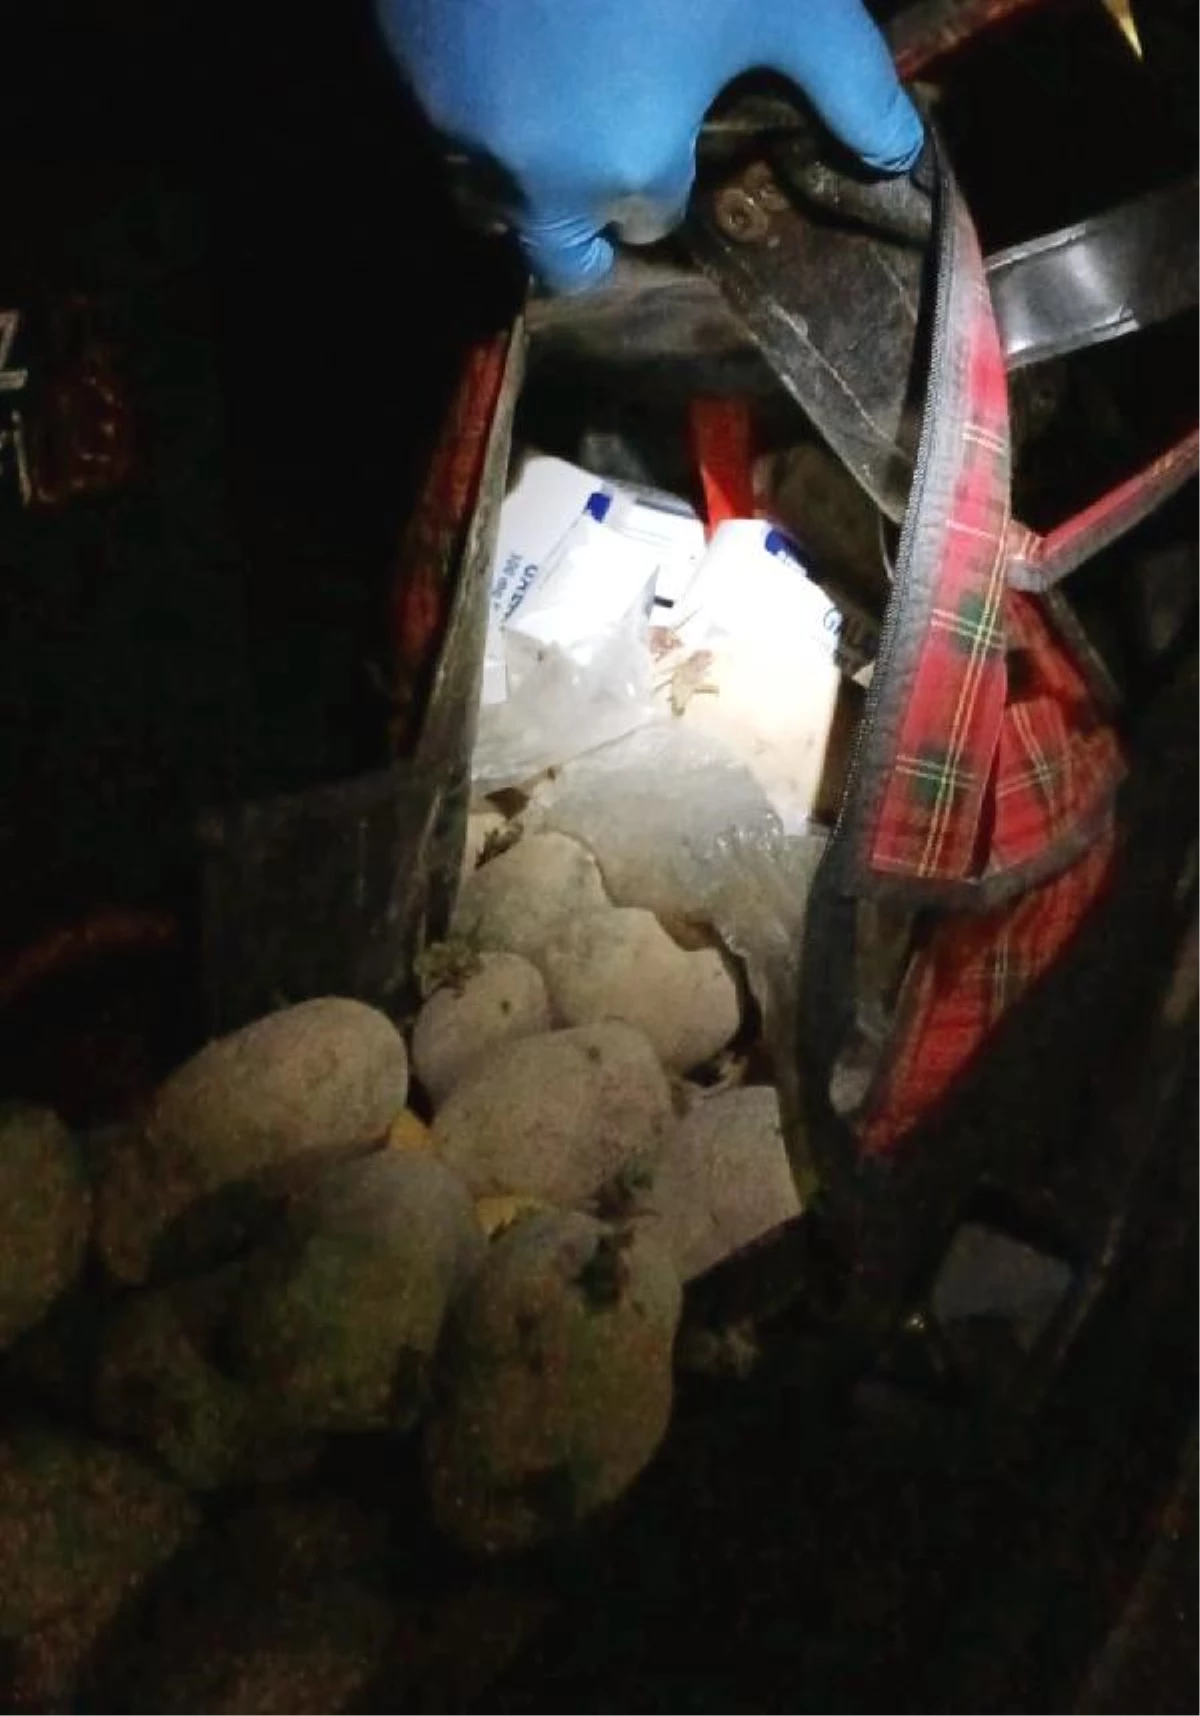 Patates dolu bez çantadan 896 uyuşturucu hap çıktı